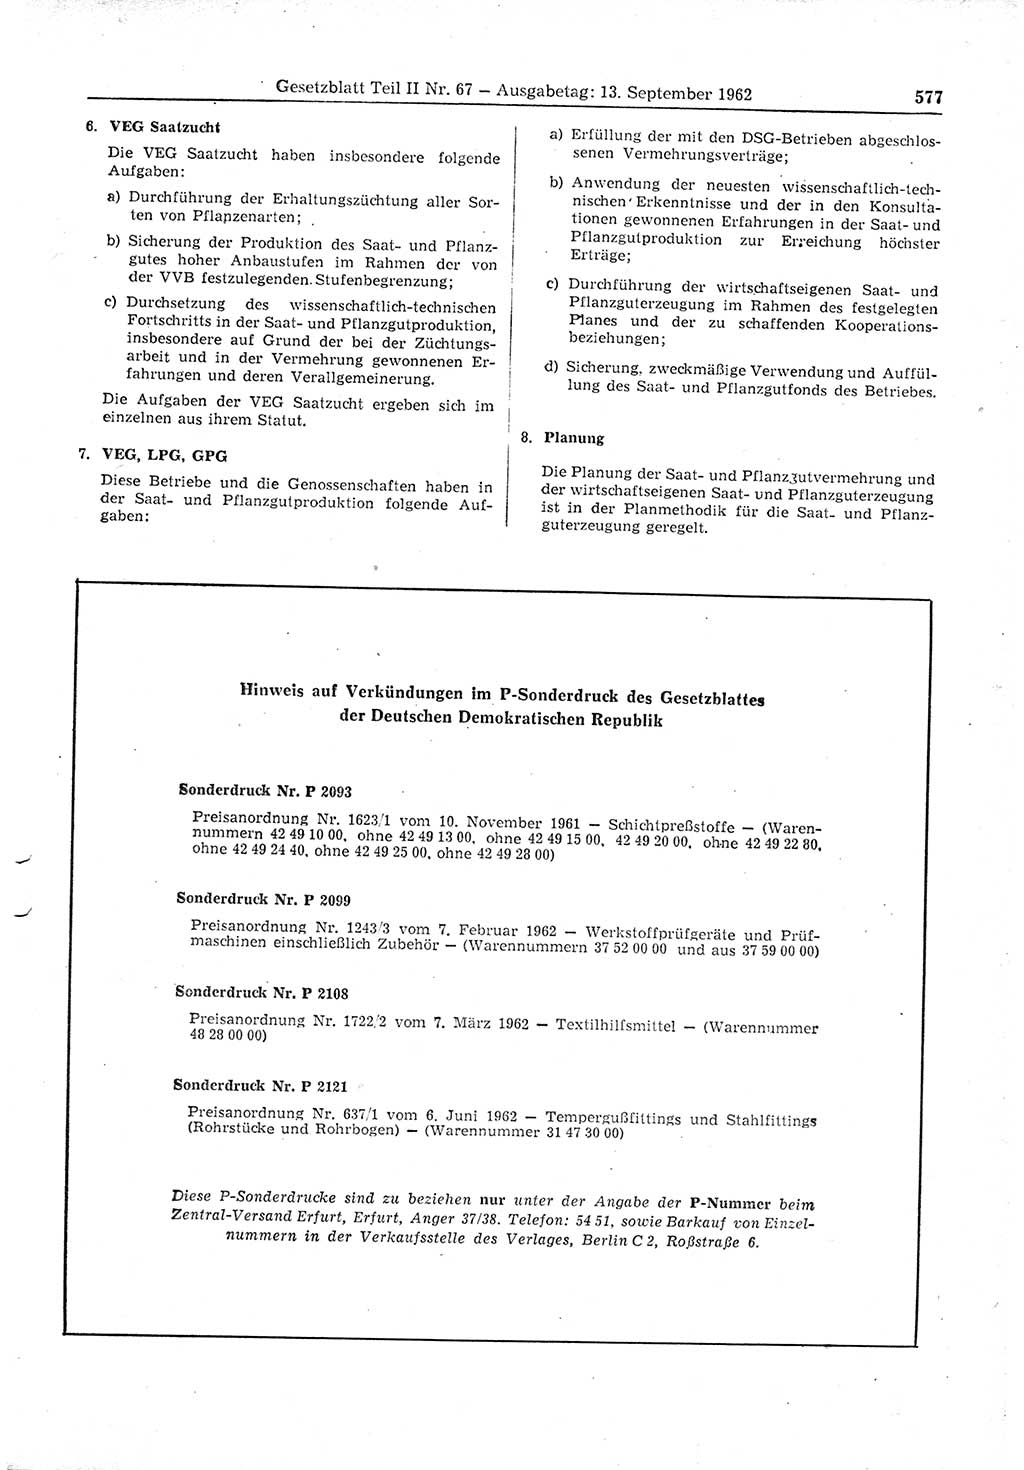 Gesetzblatt (GBl.) der Deutschen Demokratischen Republik (DDR) Teil ⅠⅠ 1962, Seite 577 (GBl. DDR ⅠⅠ 1962, S. 577)